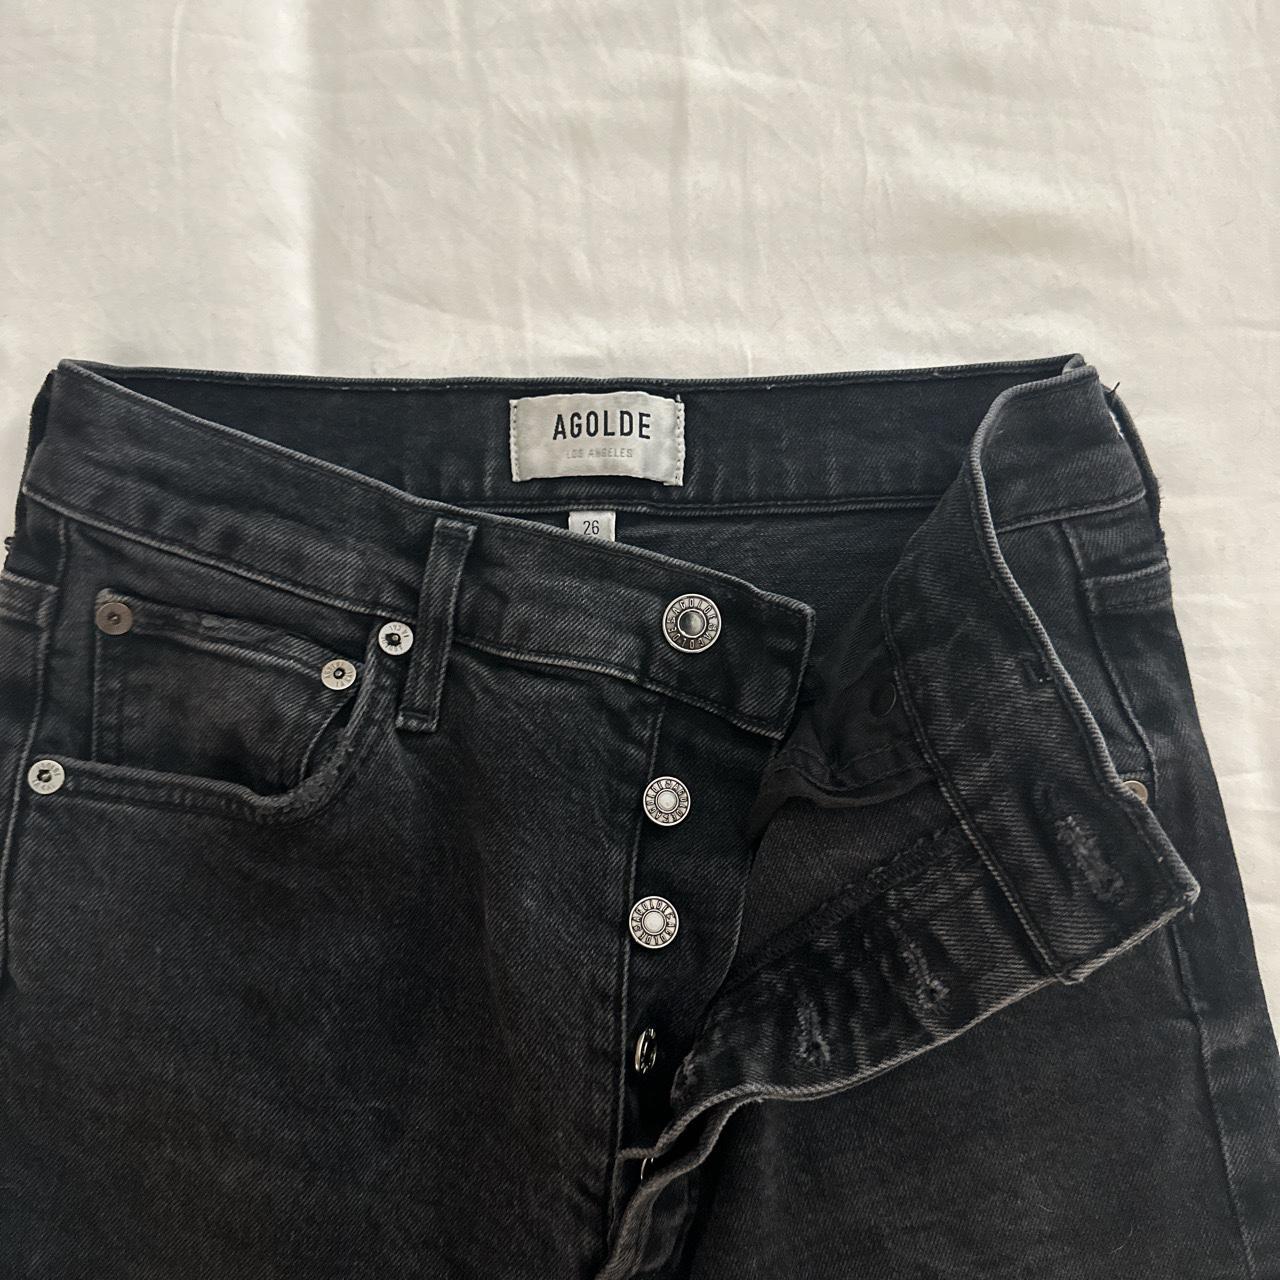 AGOLDE Women's Black Jeans (2)